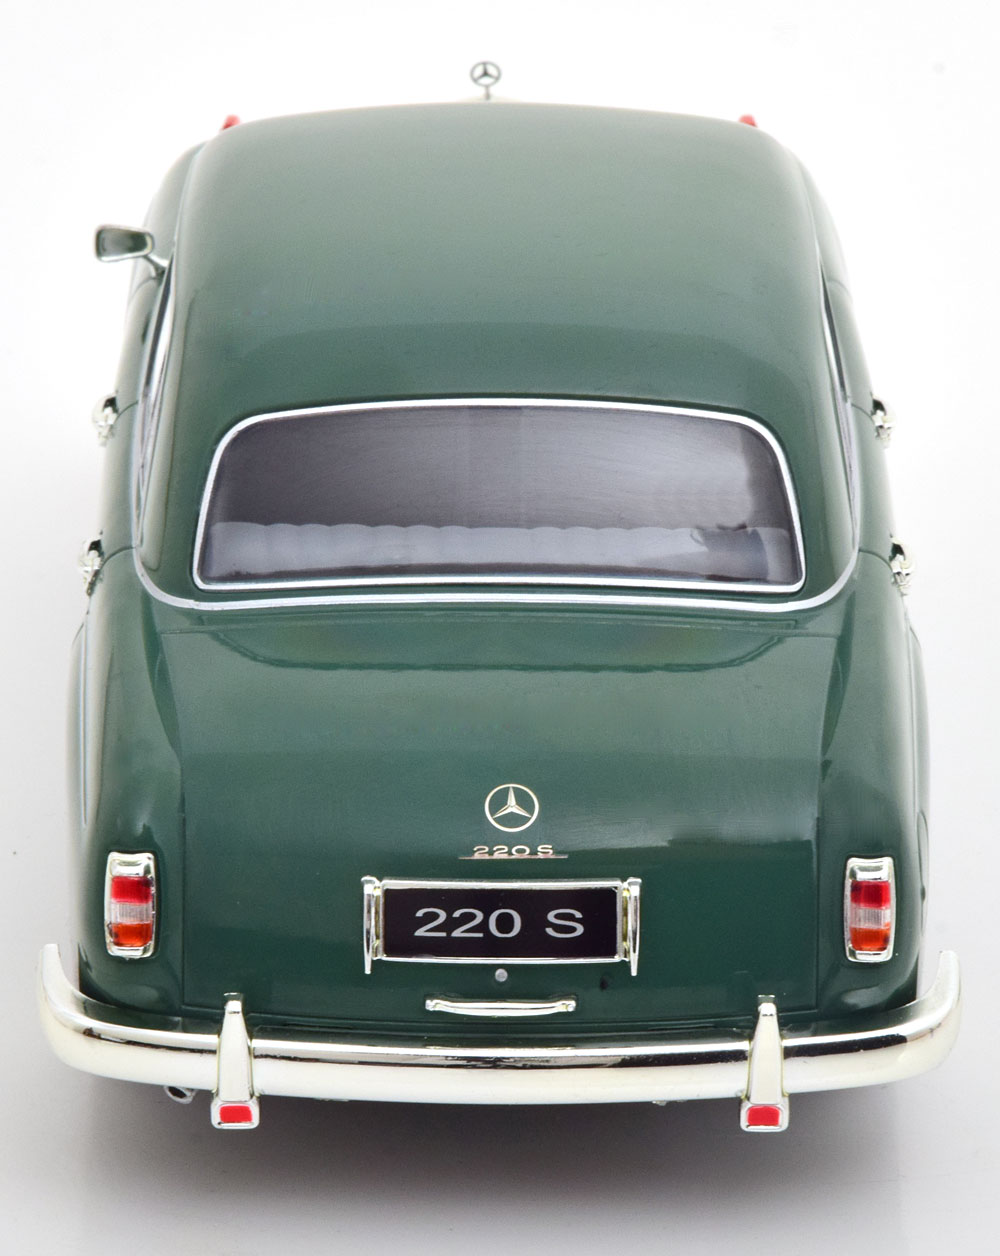 1:18 KK-Scale Mercedes 220S W180II Saloon 1956 green